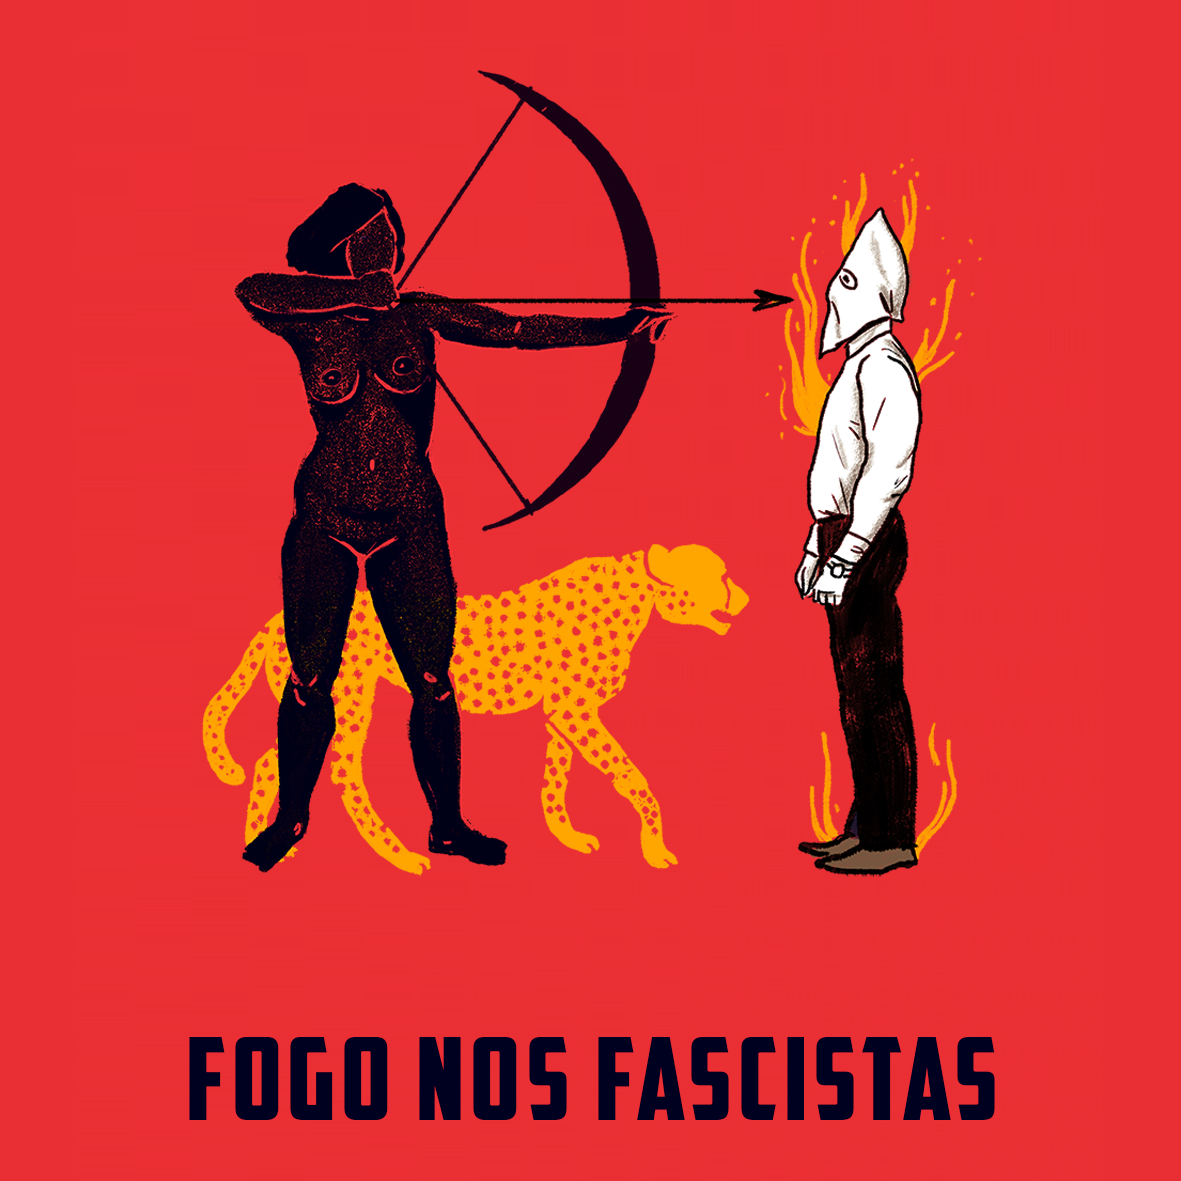 Bandeira Fogo nos fascistas